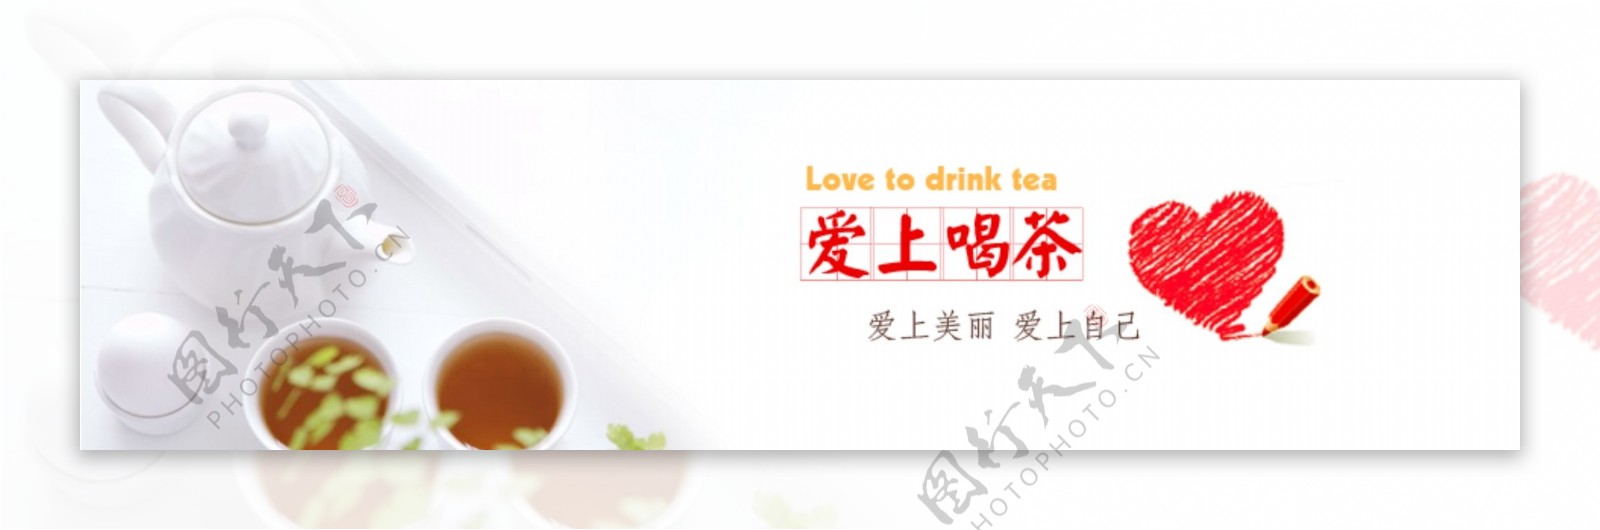 爱上喝茶广告